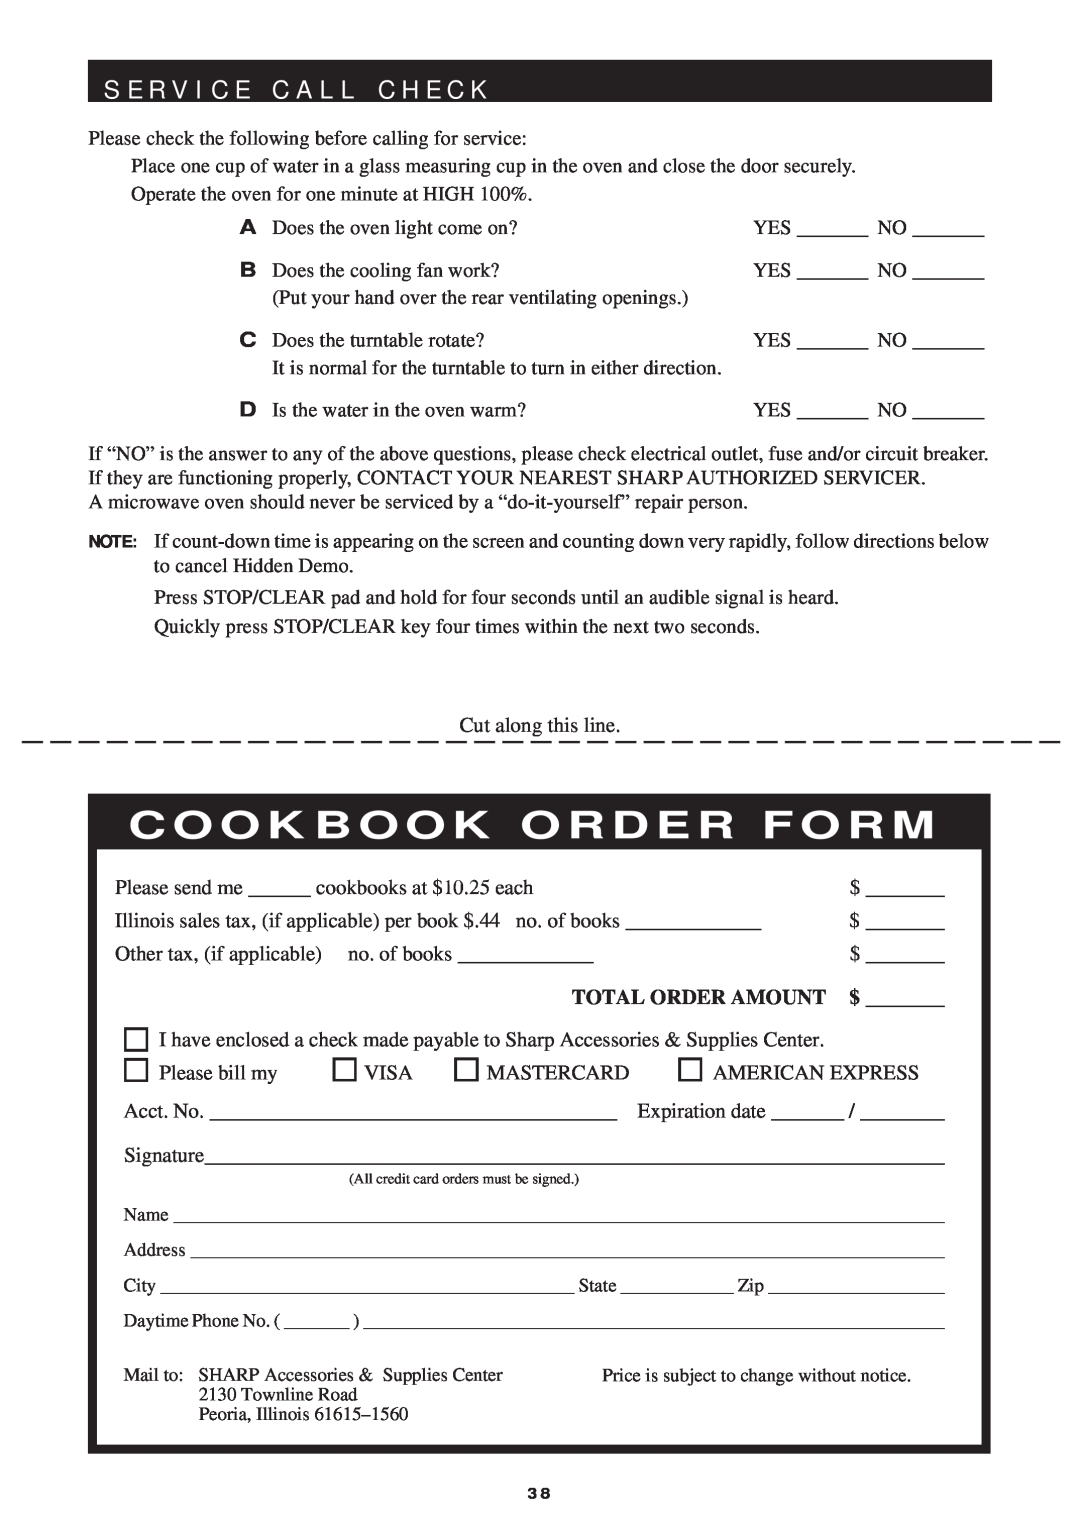 Sharp R-1751, R-1754, R-1750, R-1752 manual S E R V I C E C A L L C H E C K, Cookbook Order Form 